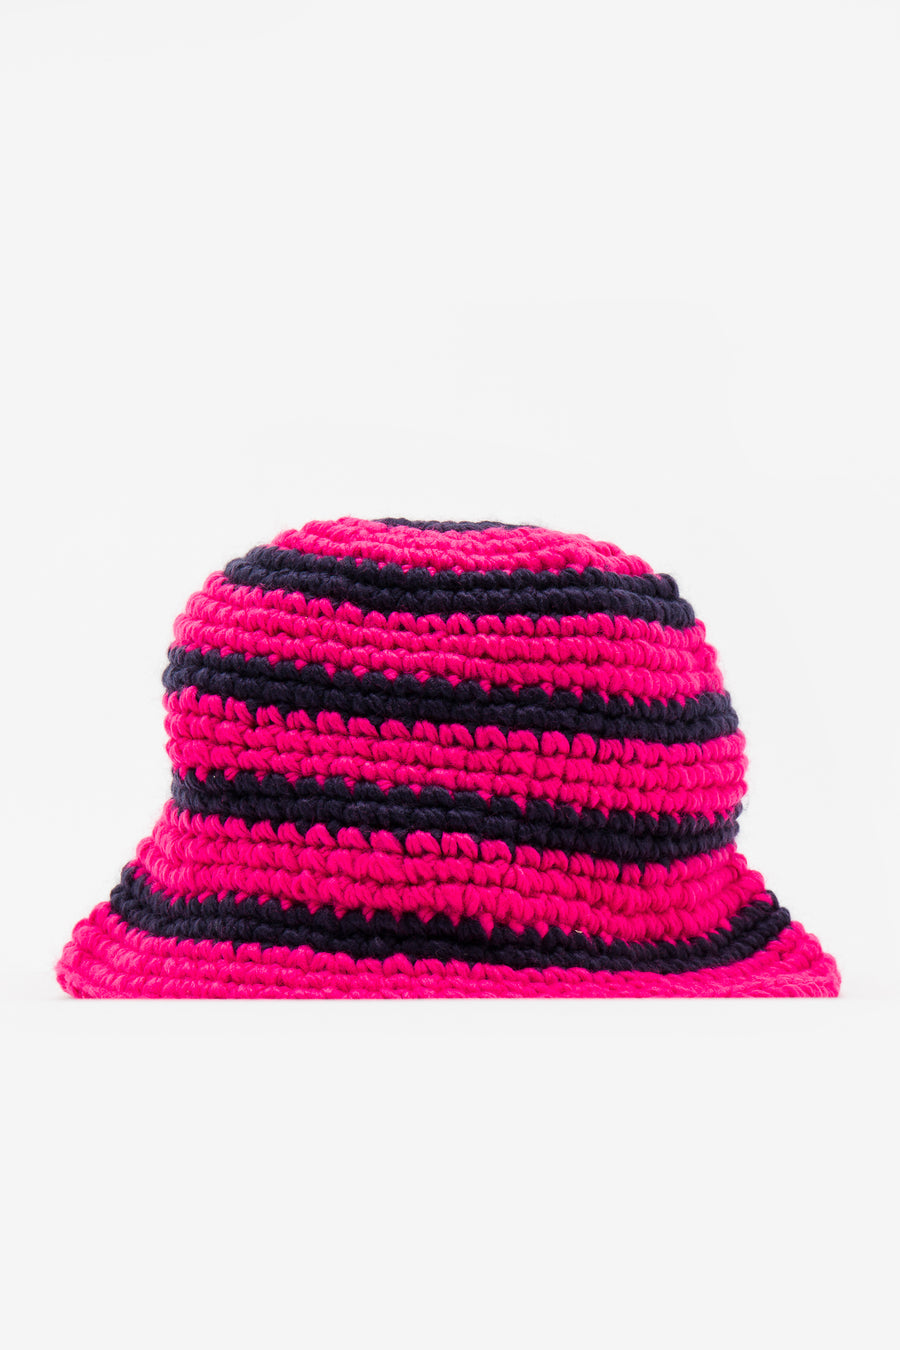 Stüssy - Swirl Knit Bucket Hat in Hot Pink - Notre